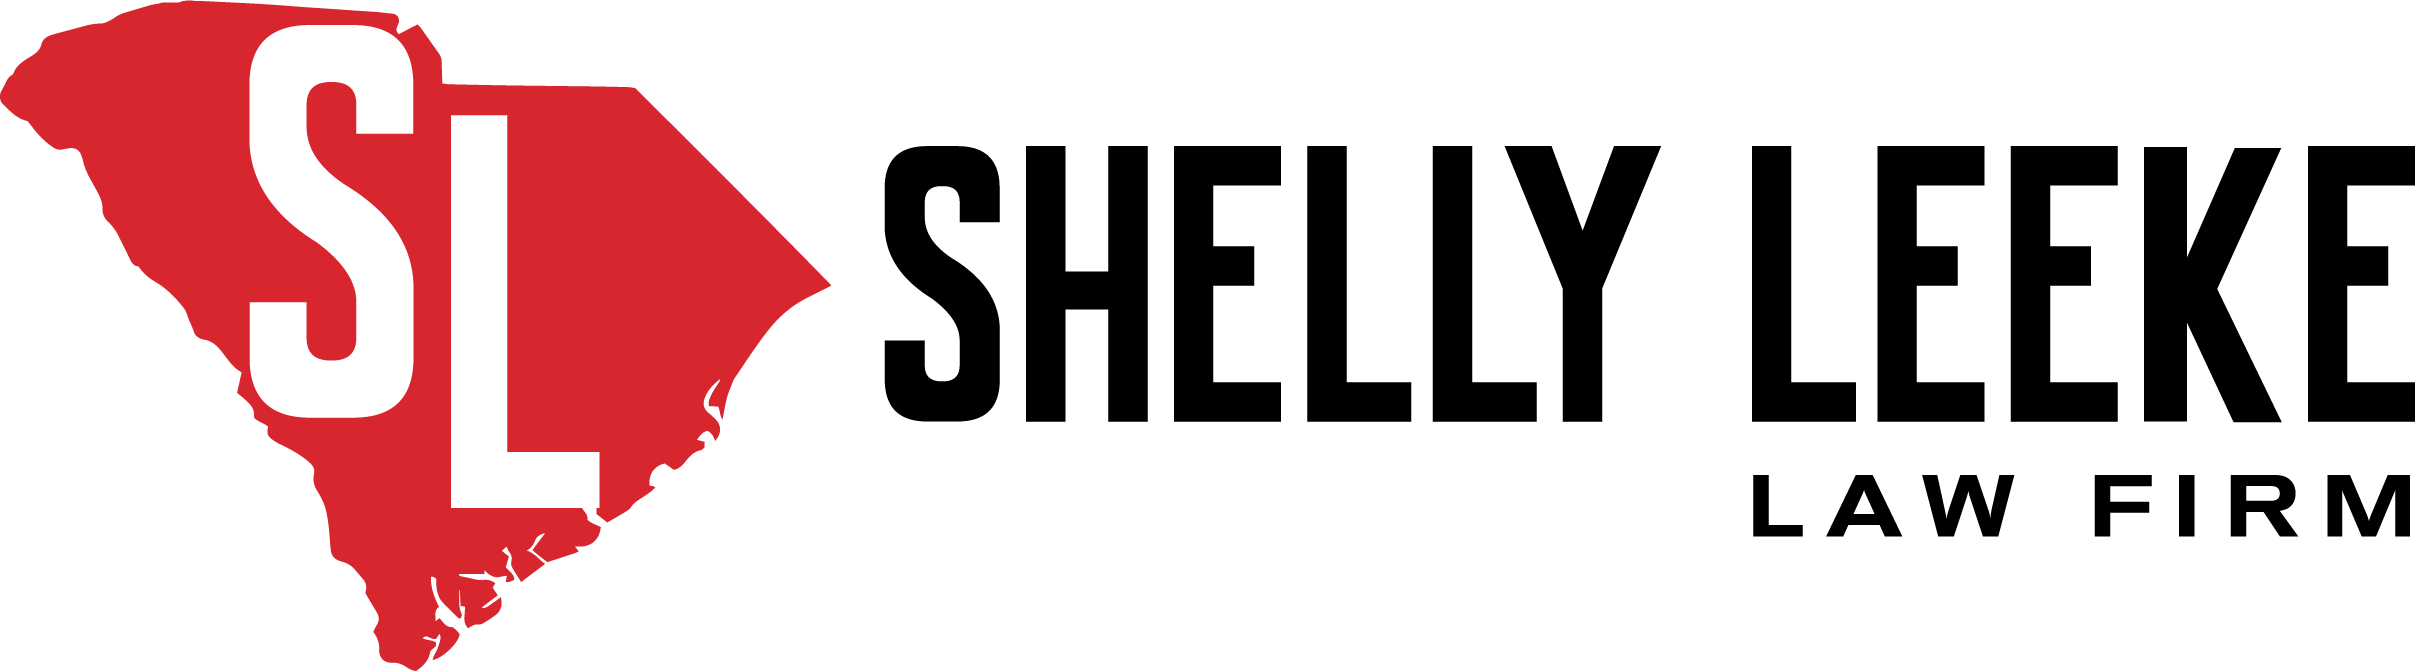 Shelly Leeke Law Firm, LLC